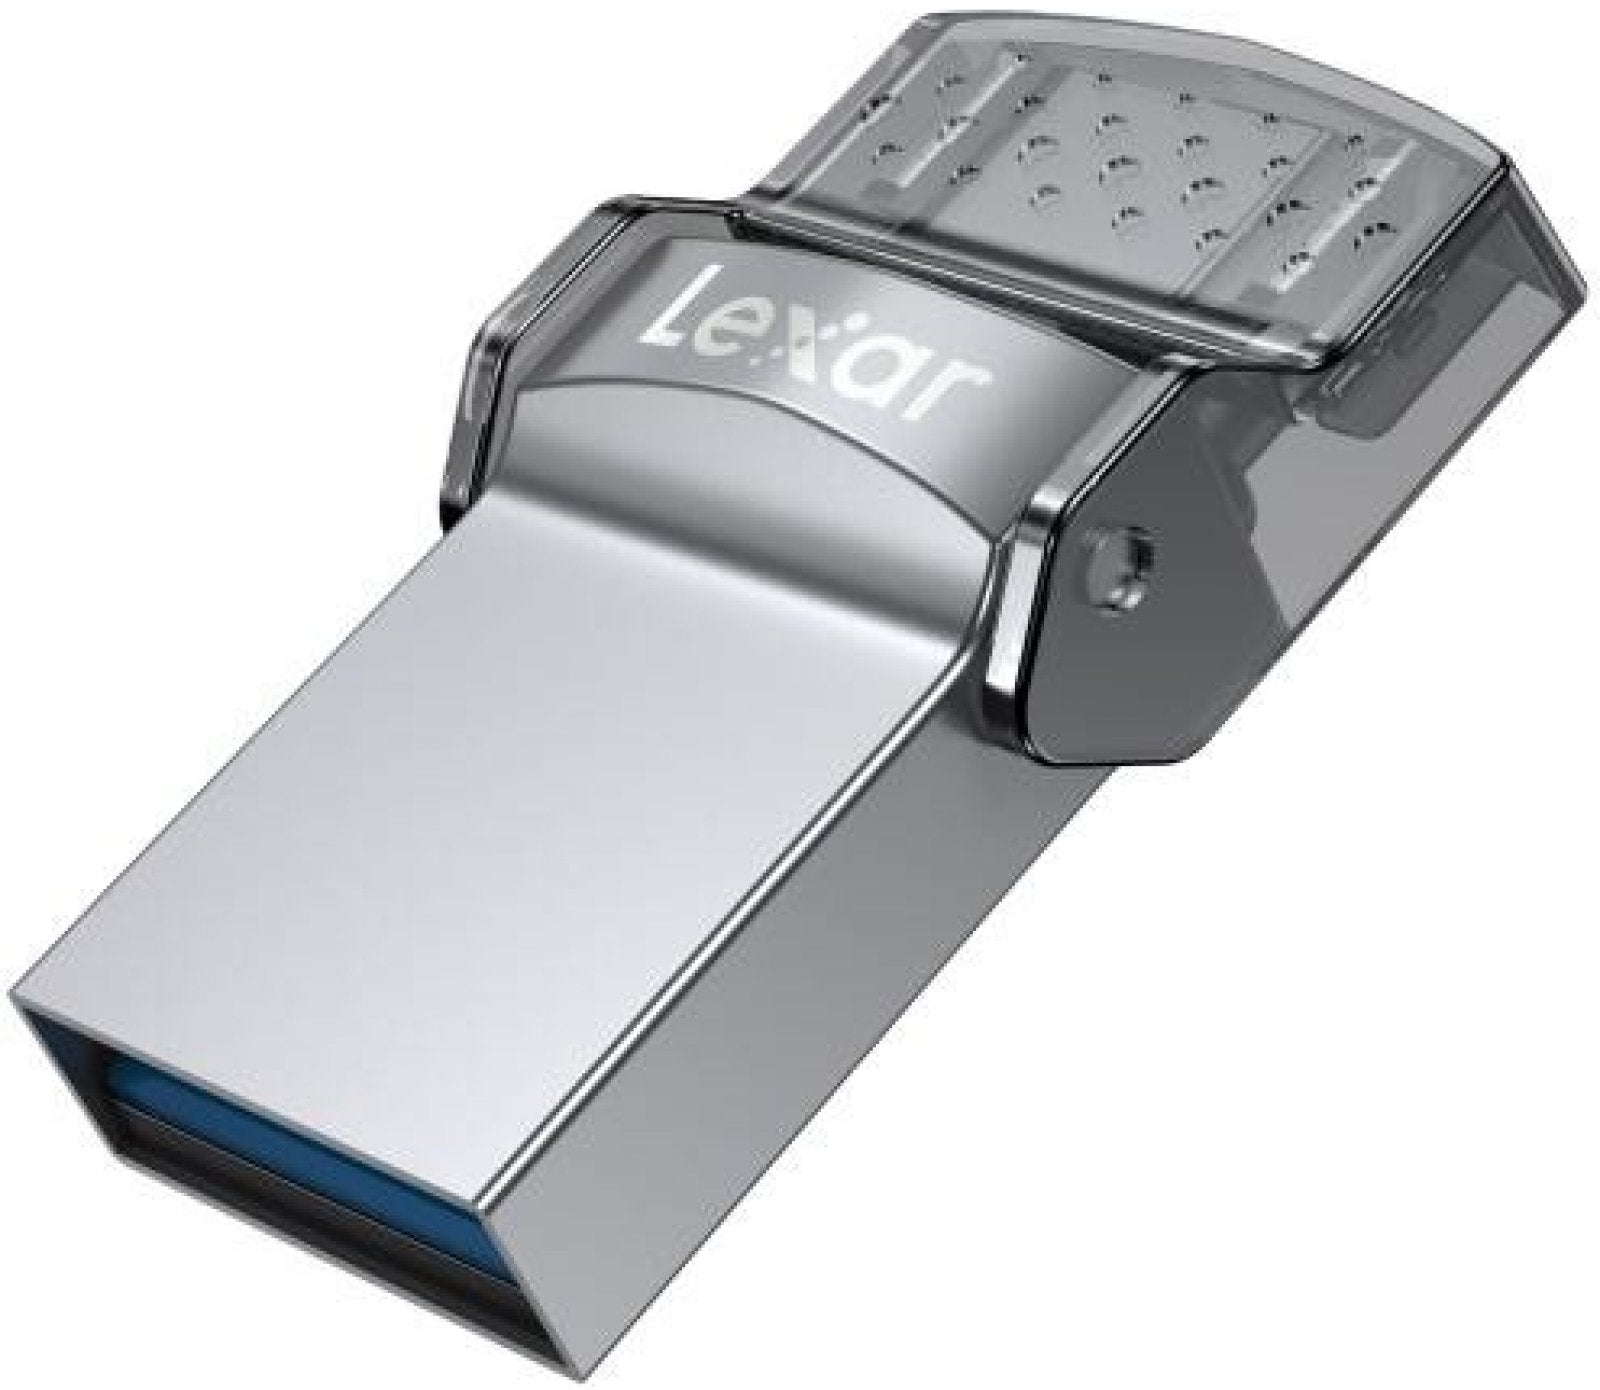 Lexar Jumpdrive Dual Drive  USB 3.0 TYPE C 64GB